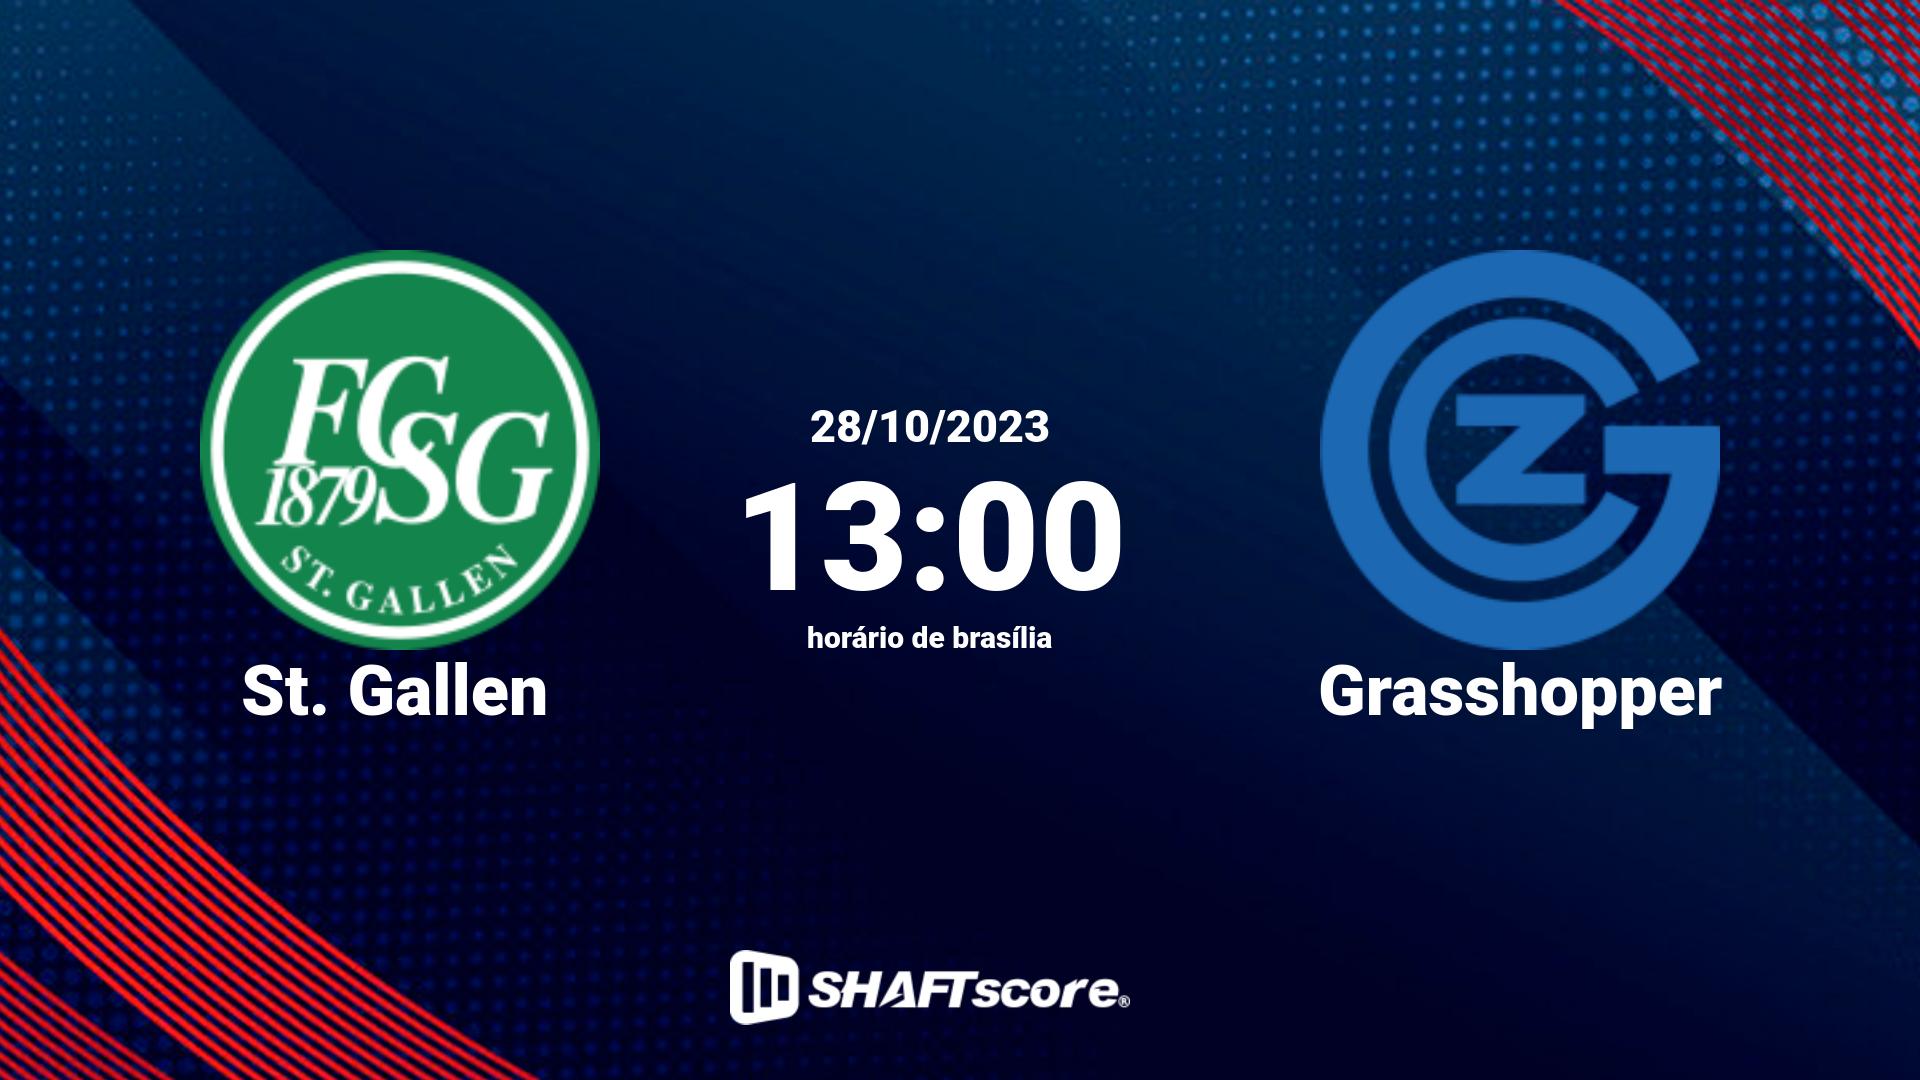 Estatísticas do jogo St. Gallen vs Grasshopper 28.10 13:00